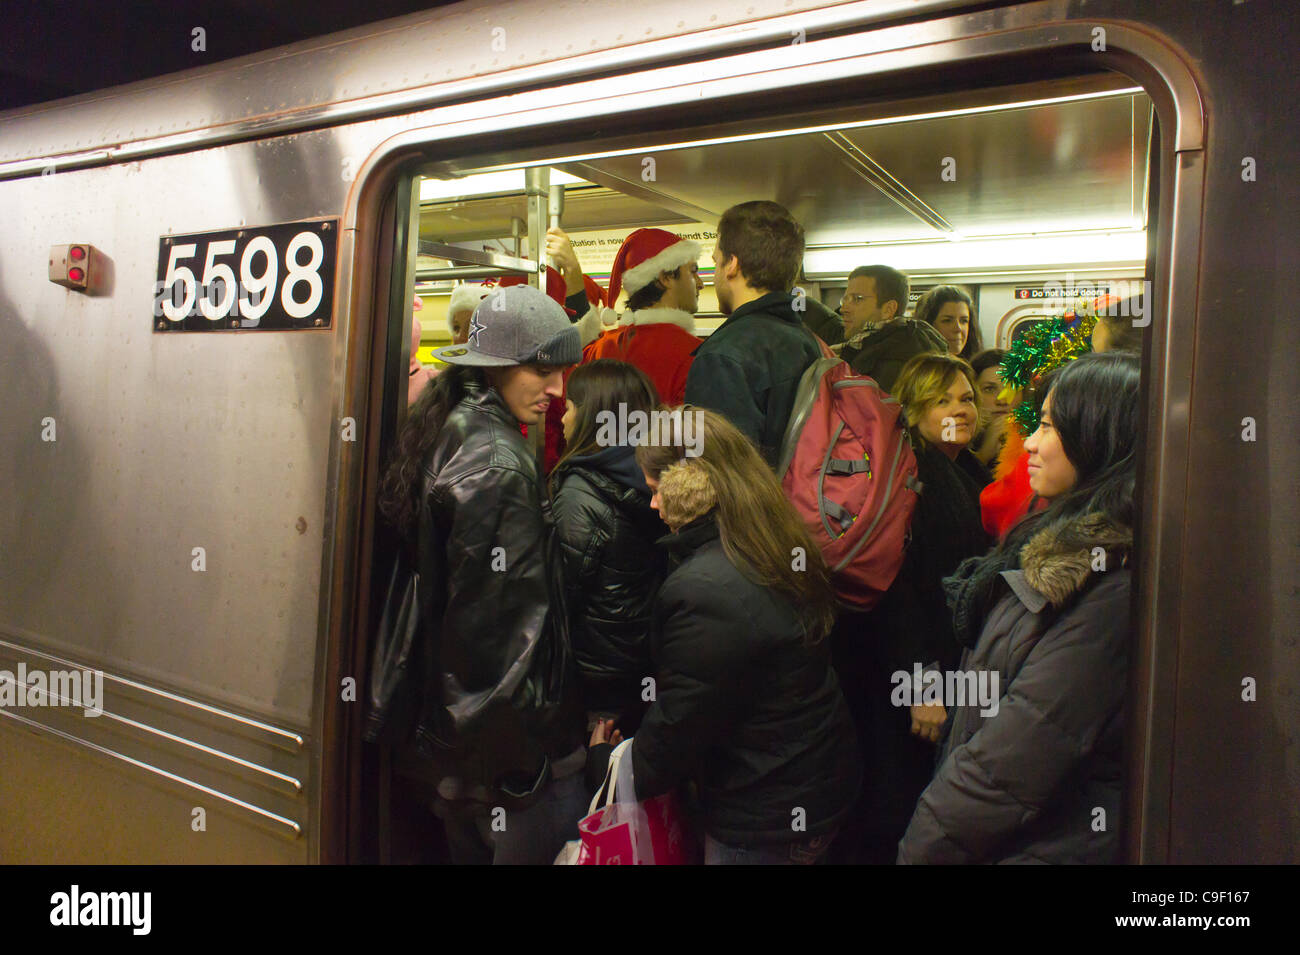 Les fêtards de Noël participant au voyage Santacon annuel dans le métro de New York le Samedi, Décembre 10, 2011. Santacon, principalement un pub crawl à Santa et d'autres connexes Noël costumes, attire des centaines de masqueraders allant de bar en bar. Les buveurs ont été encouragés à boire à l'e Banque D'Images